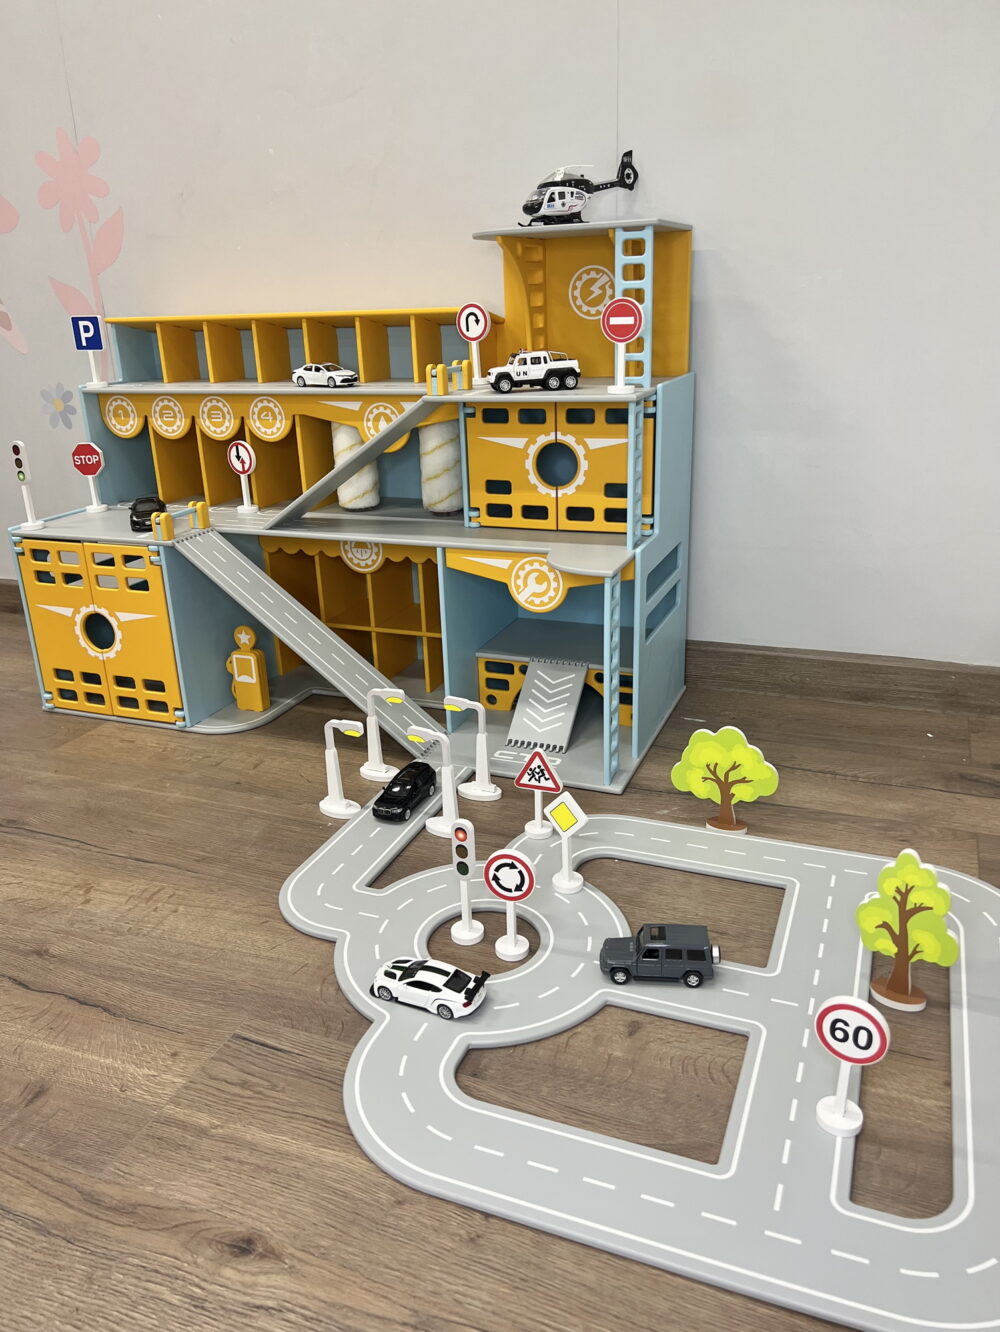 Парковка и гараж для игрушечных машинок и вертолетов со знаками дорожного движения. Исполнен в голубом и желтых цветах. Общий вид.